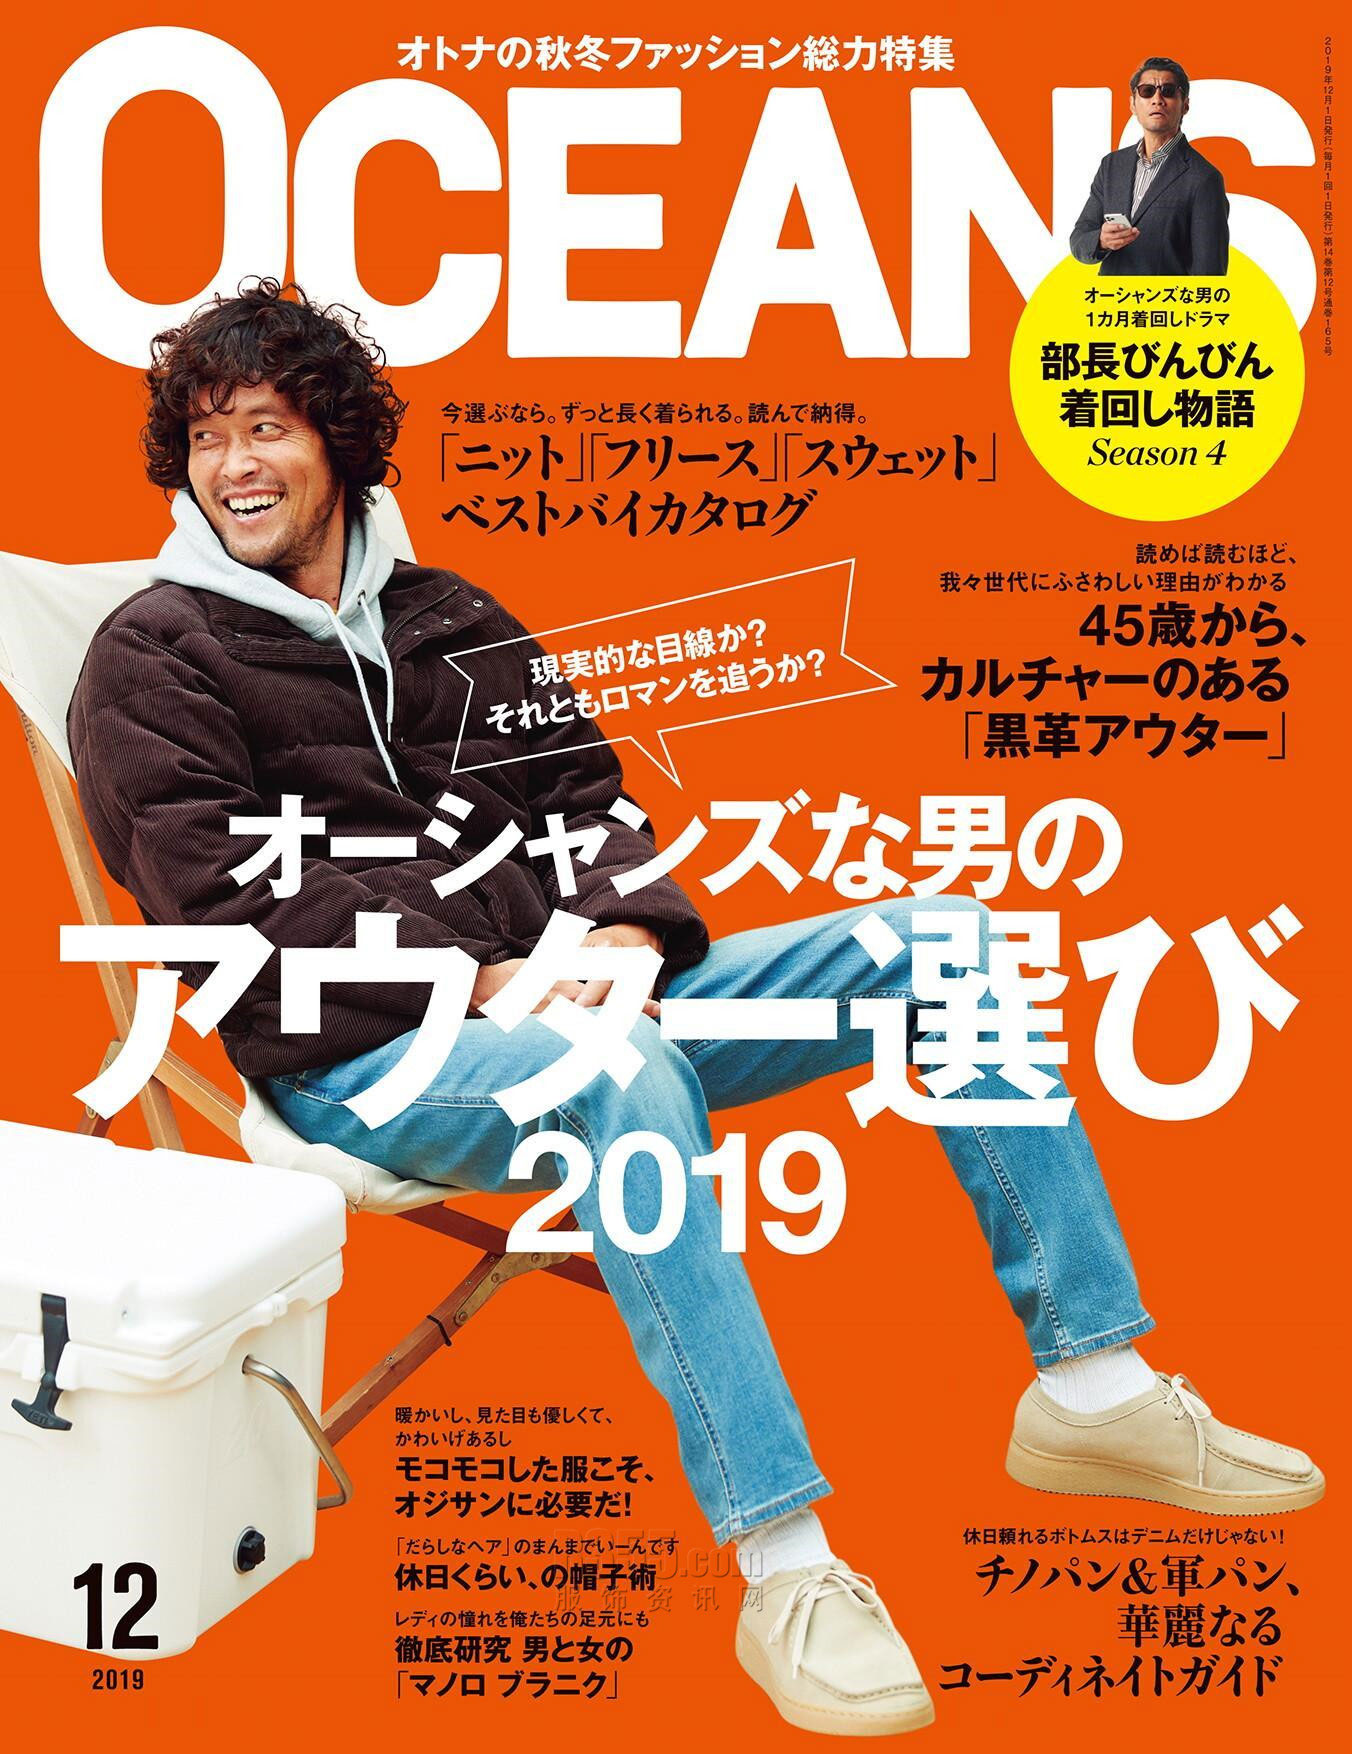 2019年12月日本《Oceans》男装系列款式期刊